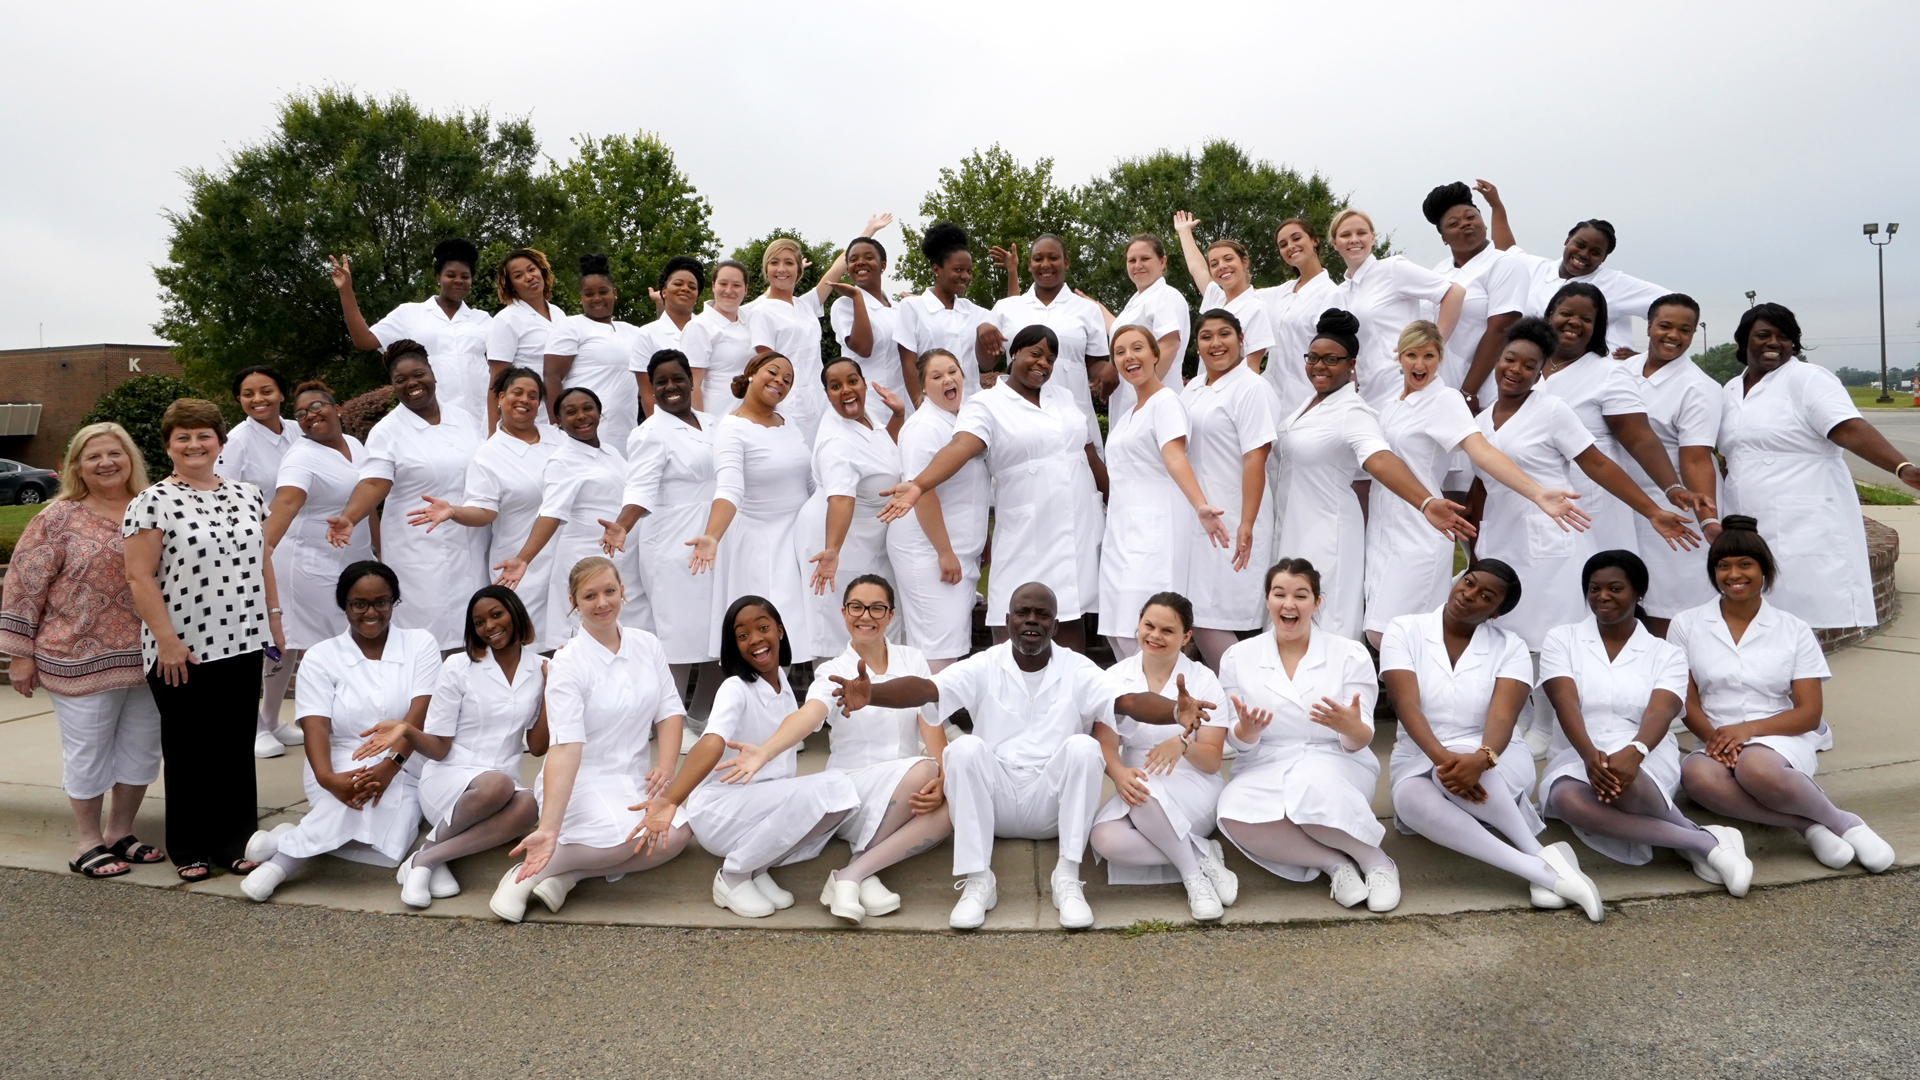 nursing graduates in uniforms